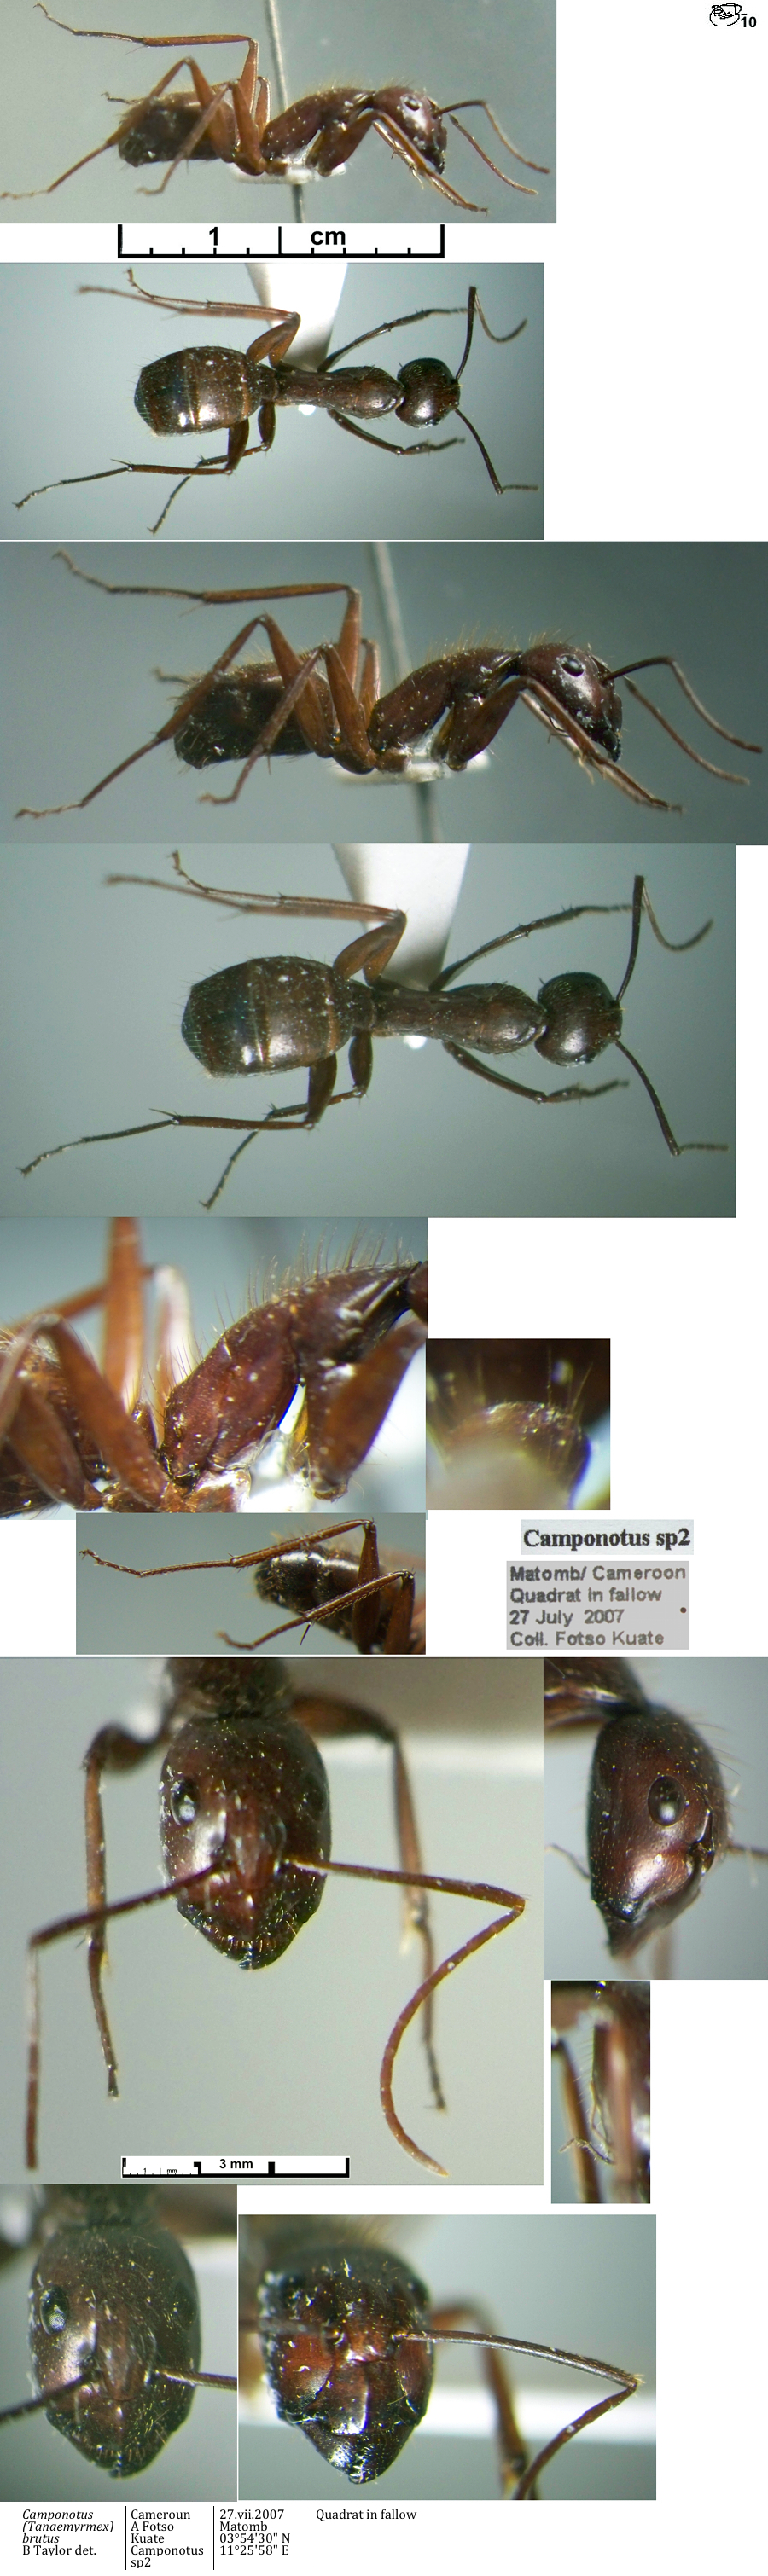 {Camponotus brutus minor}